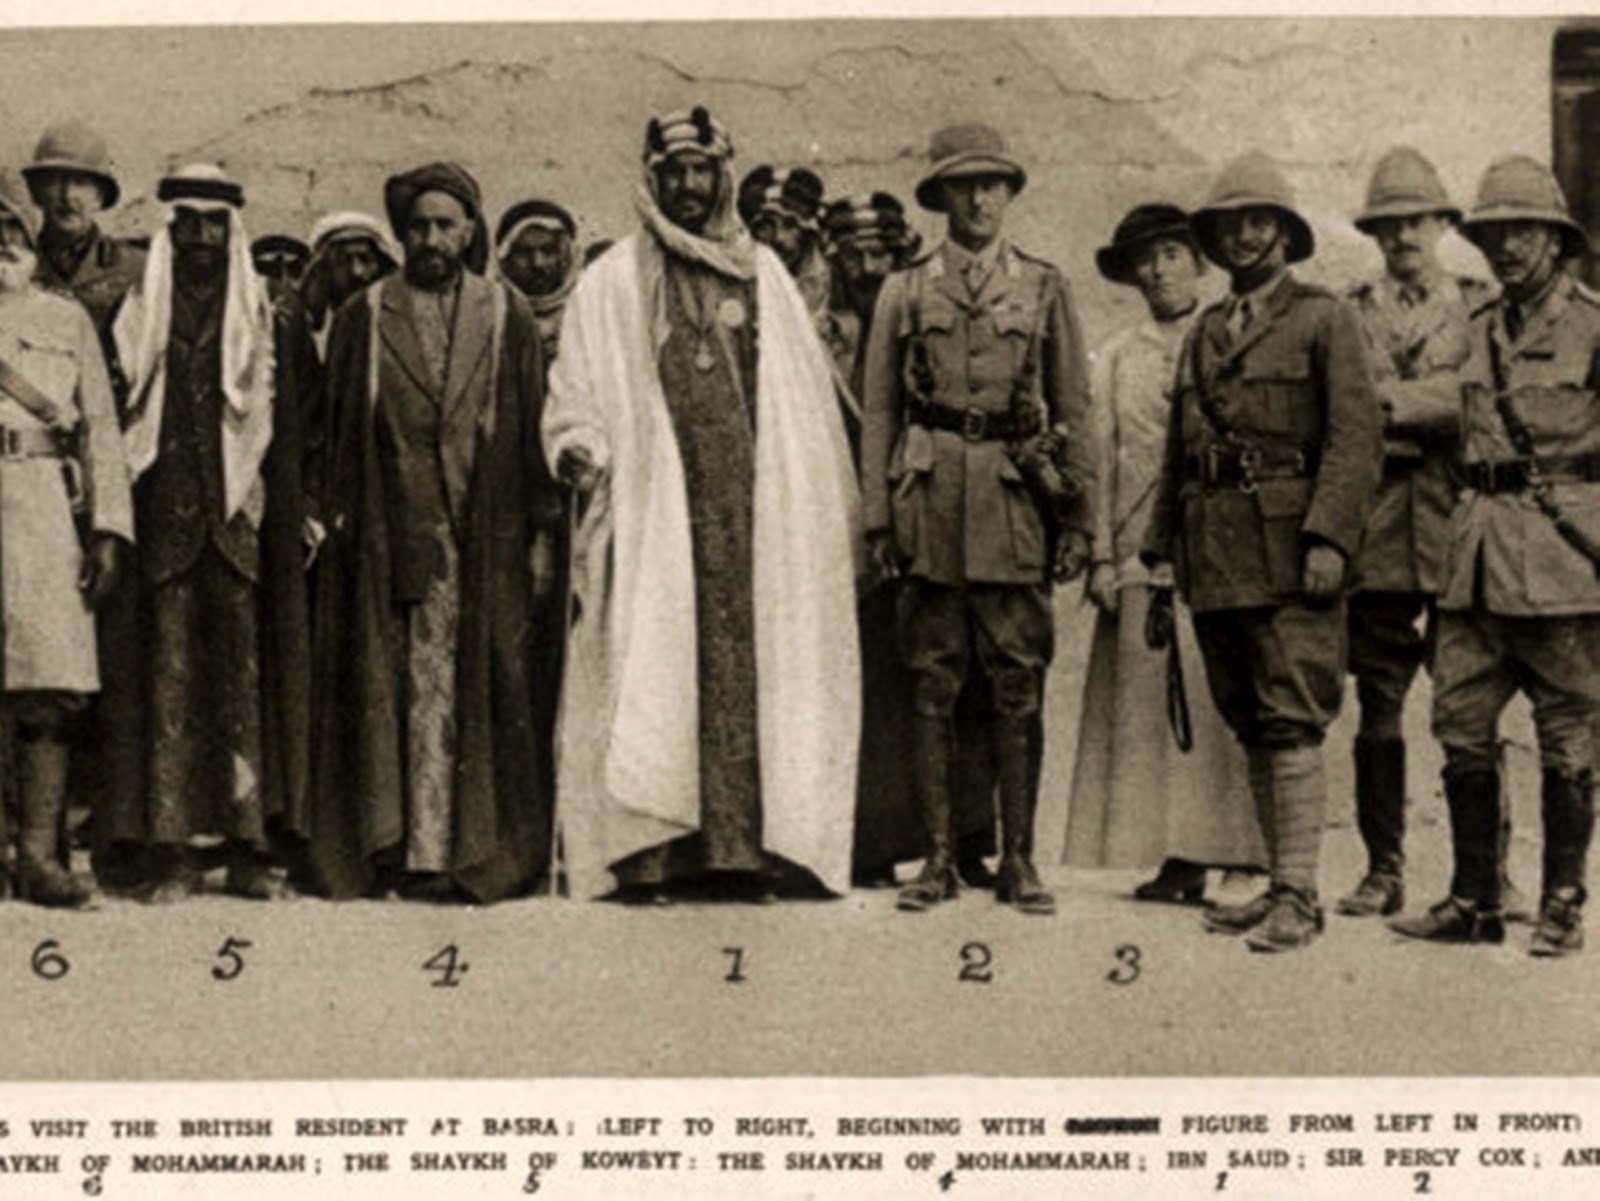 عبد العزيز آل سعود متقلدا وسام فارس الإمبراطورية البريطانية في الهند (مواقع التواصل)